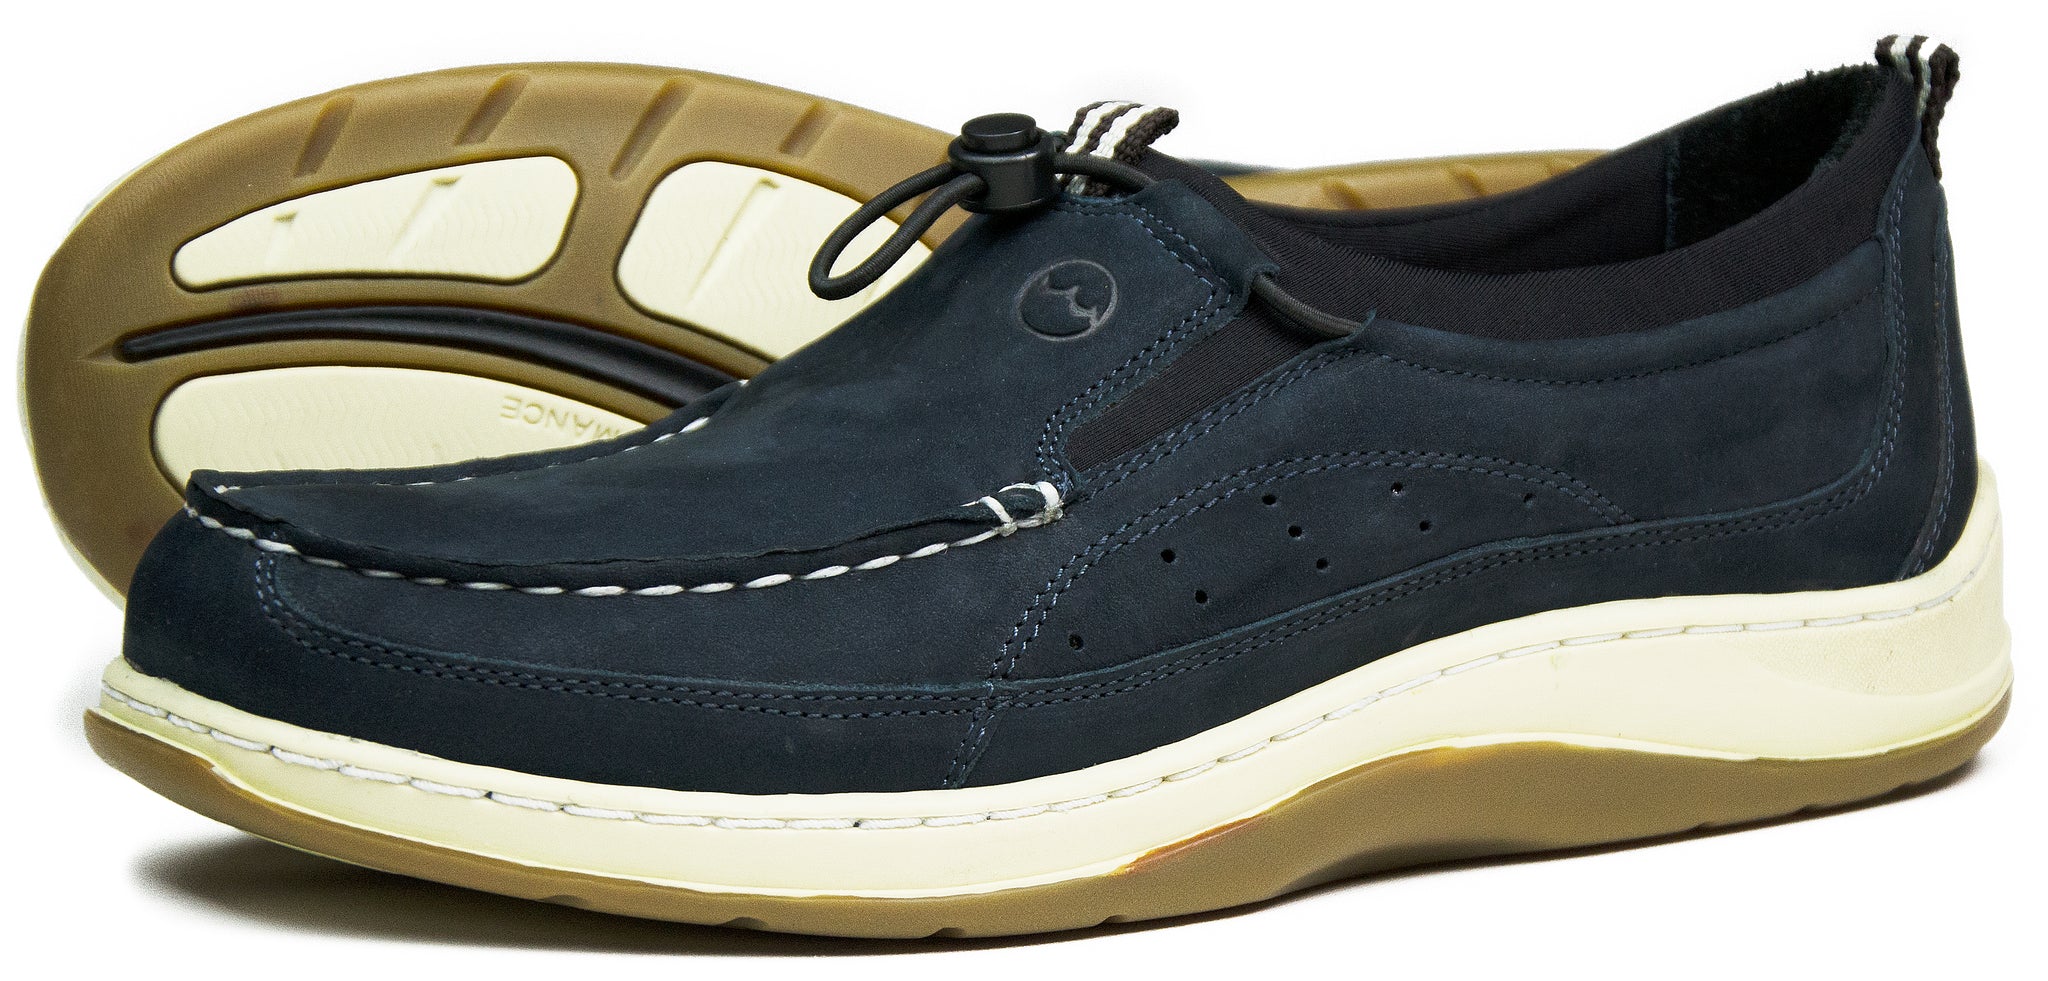 orca bay deck shoes sale